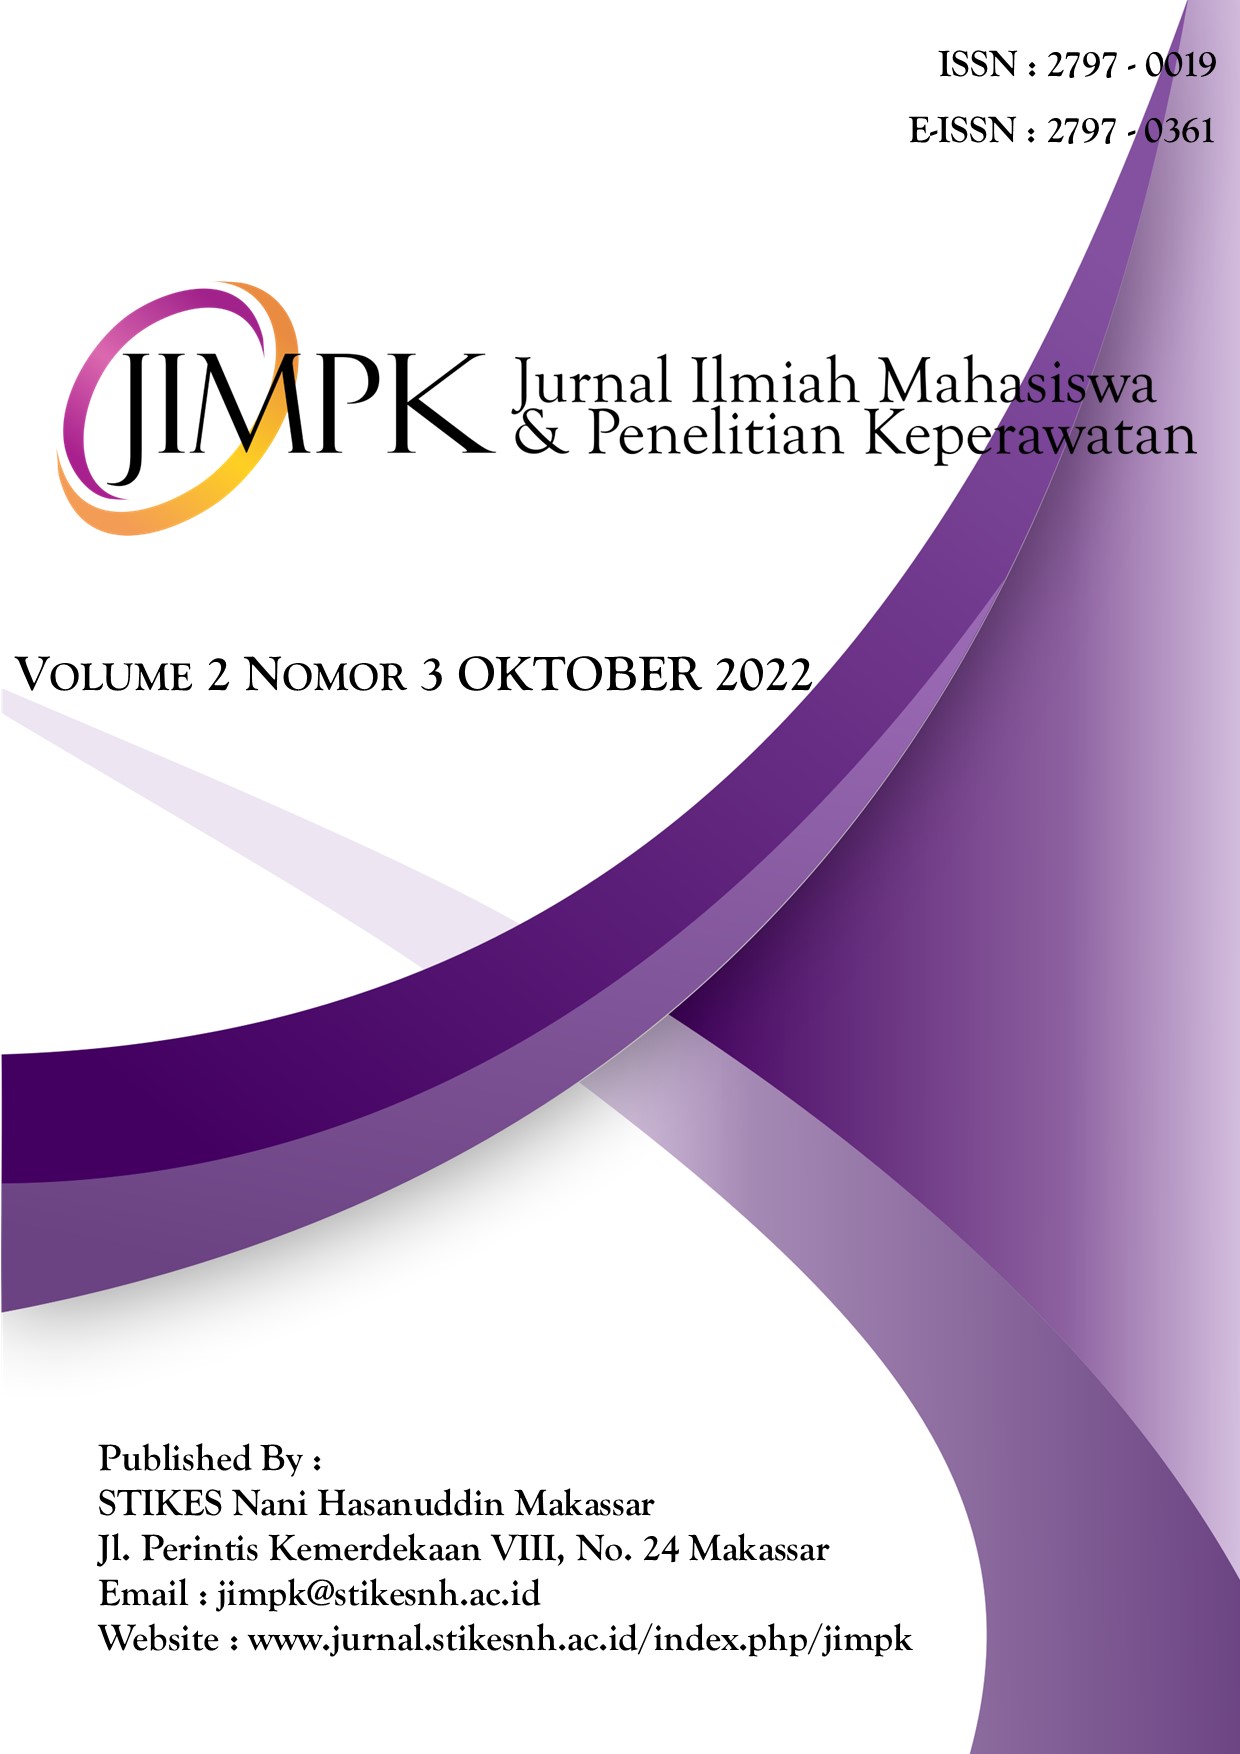 					View Vol. 2 No. 3 (2022): Jurnal Ilmiah Mahasiswa & Penelitian Keperawatan
				